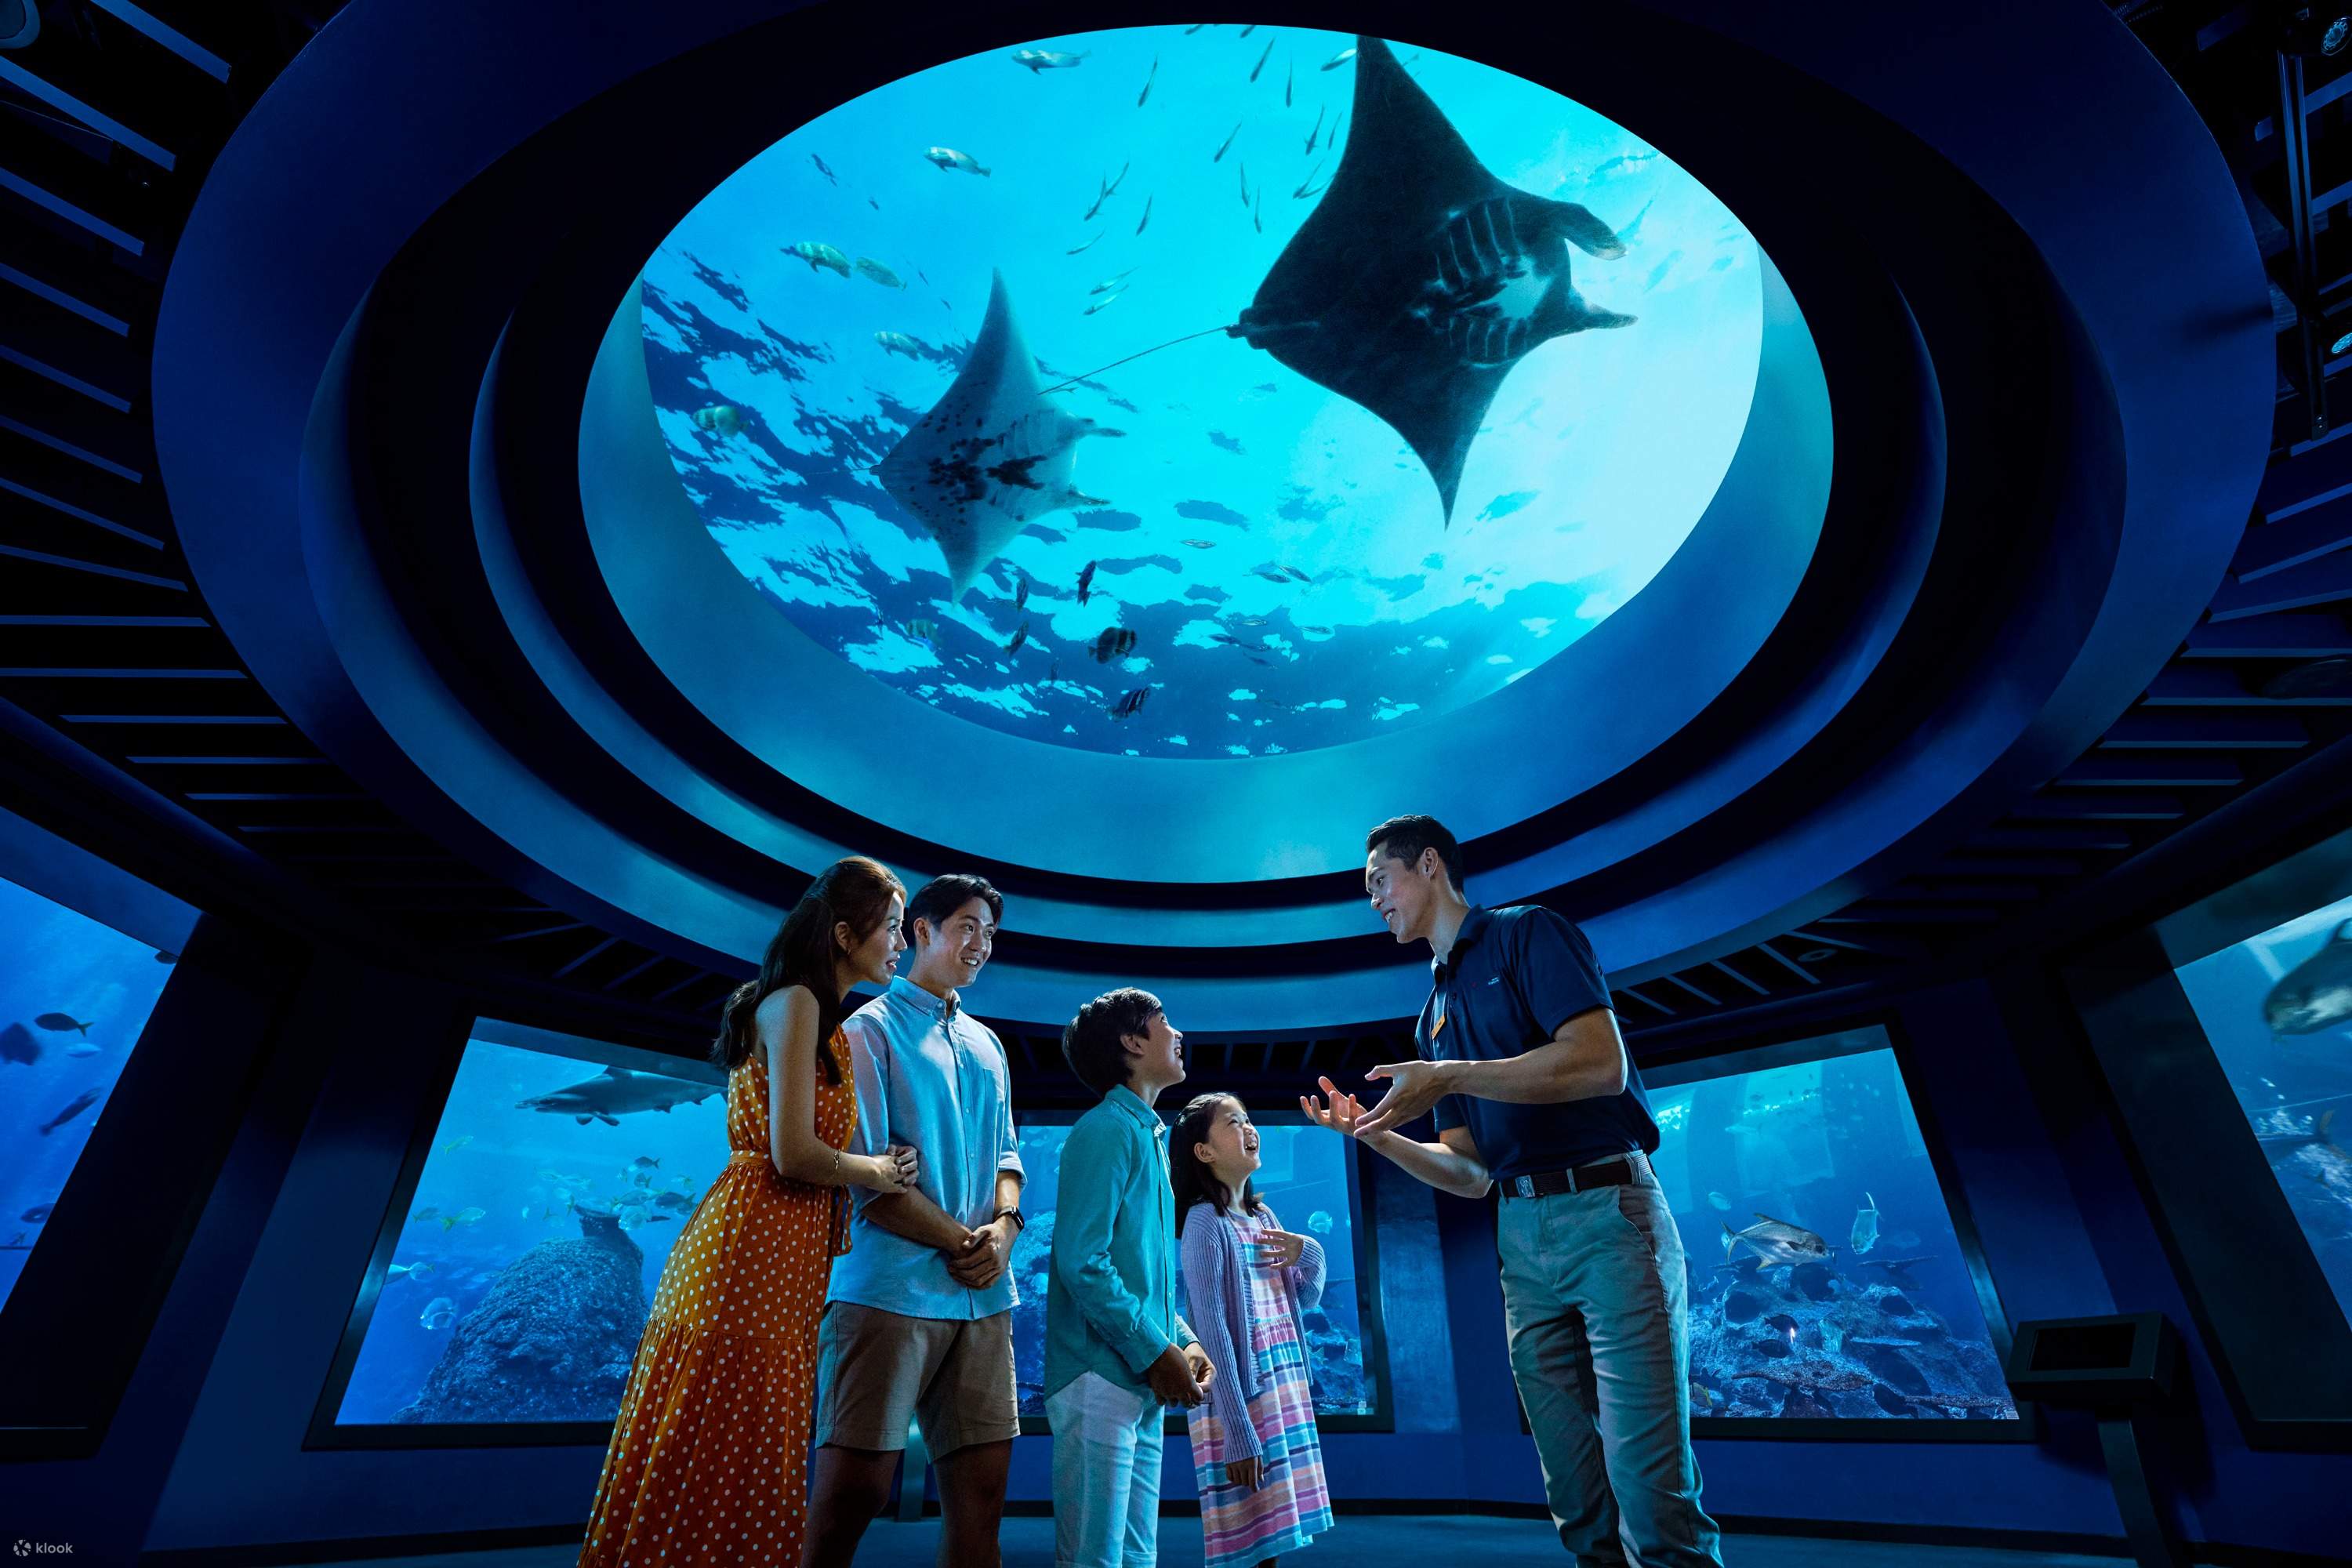 S.E.A. Aquarium VIP Tour Ticket; Singapore - Klook Philippines